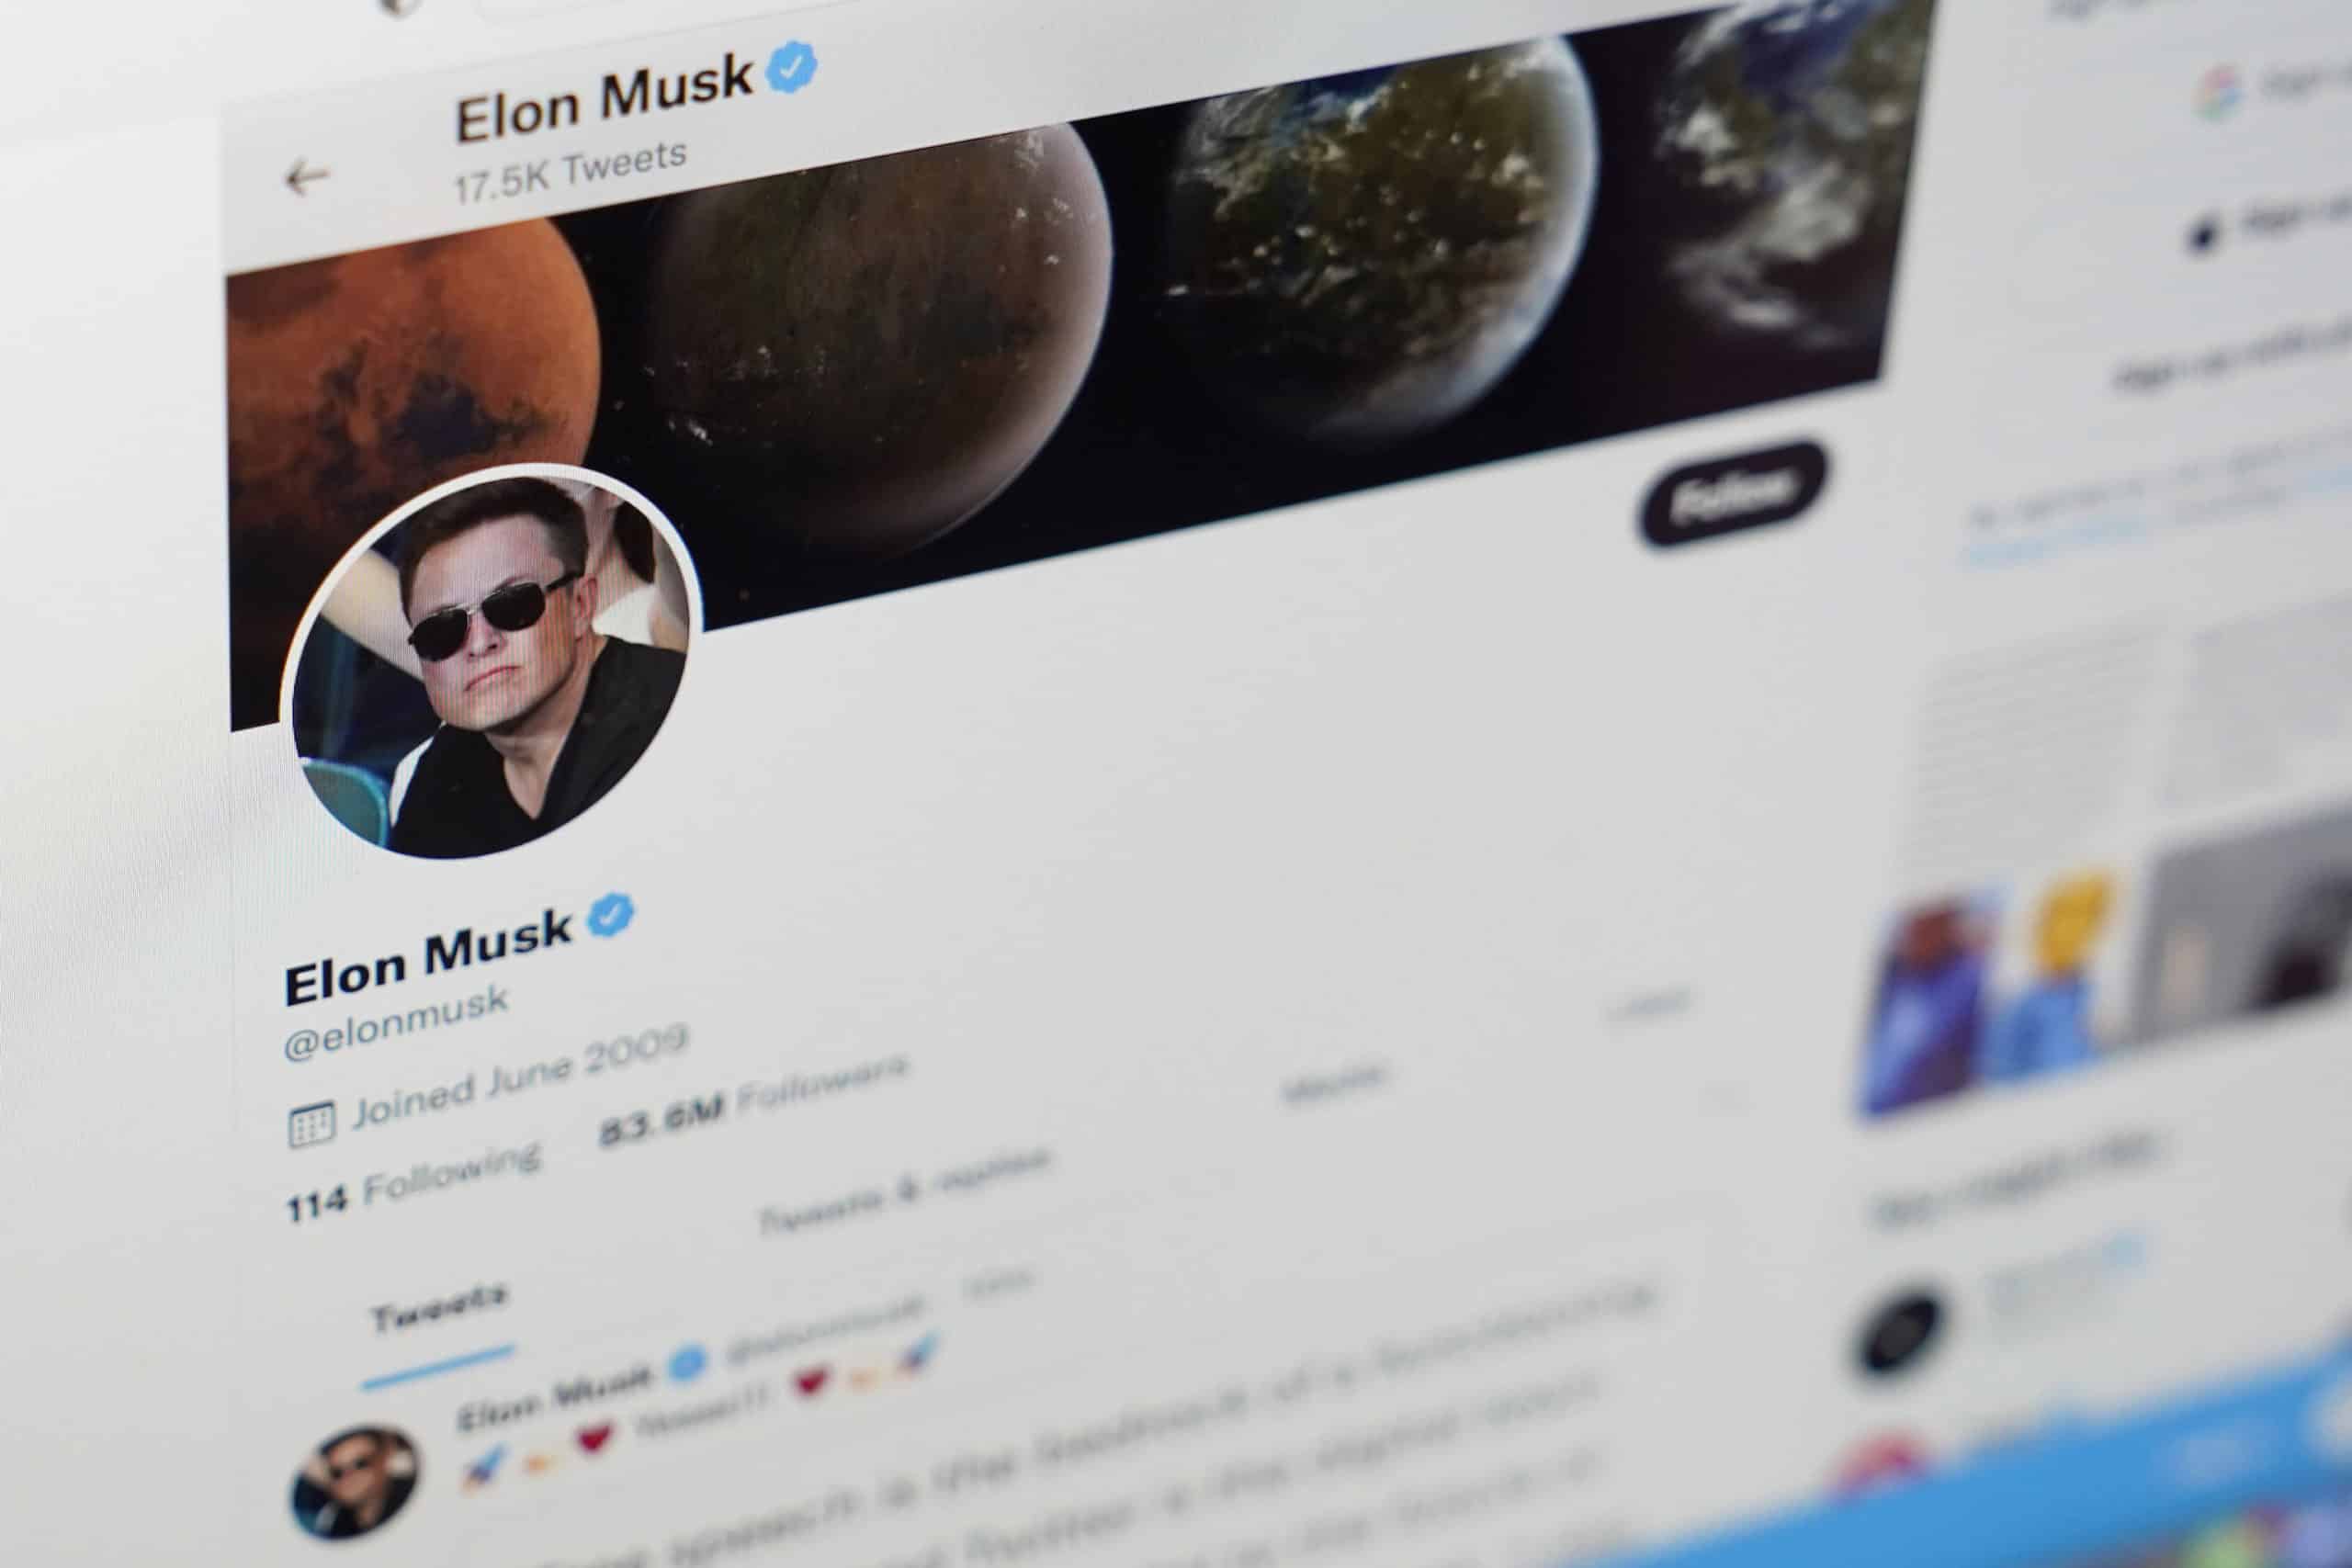 Político: Twitter, Elon Musk y las midterms